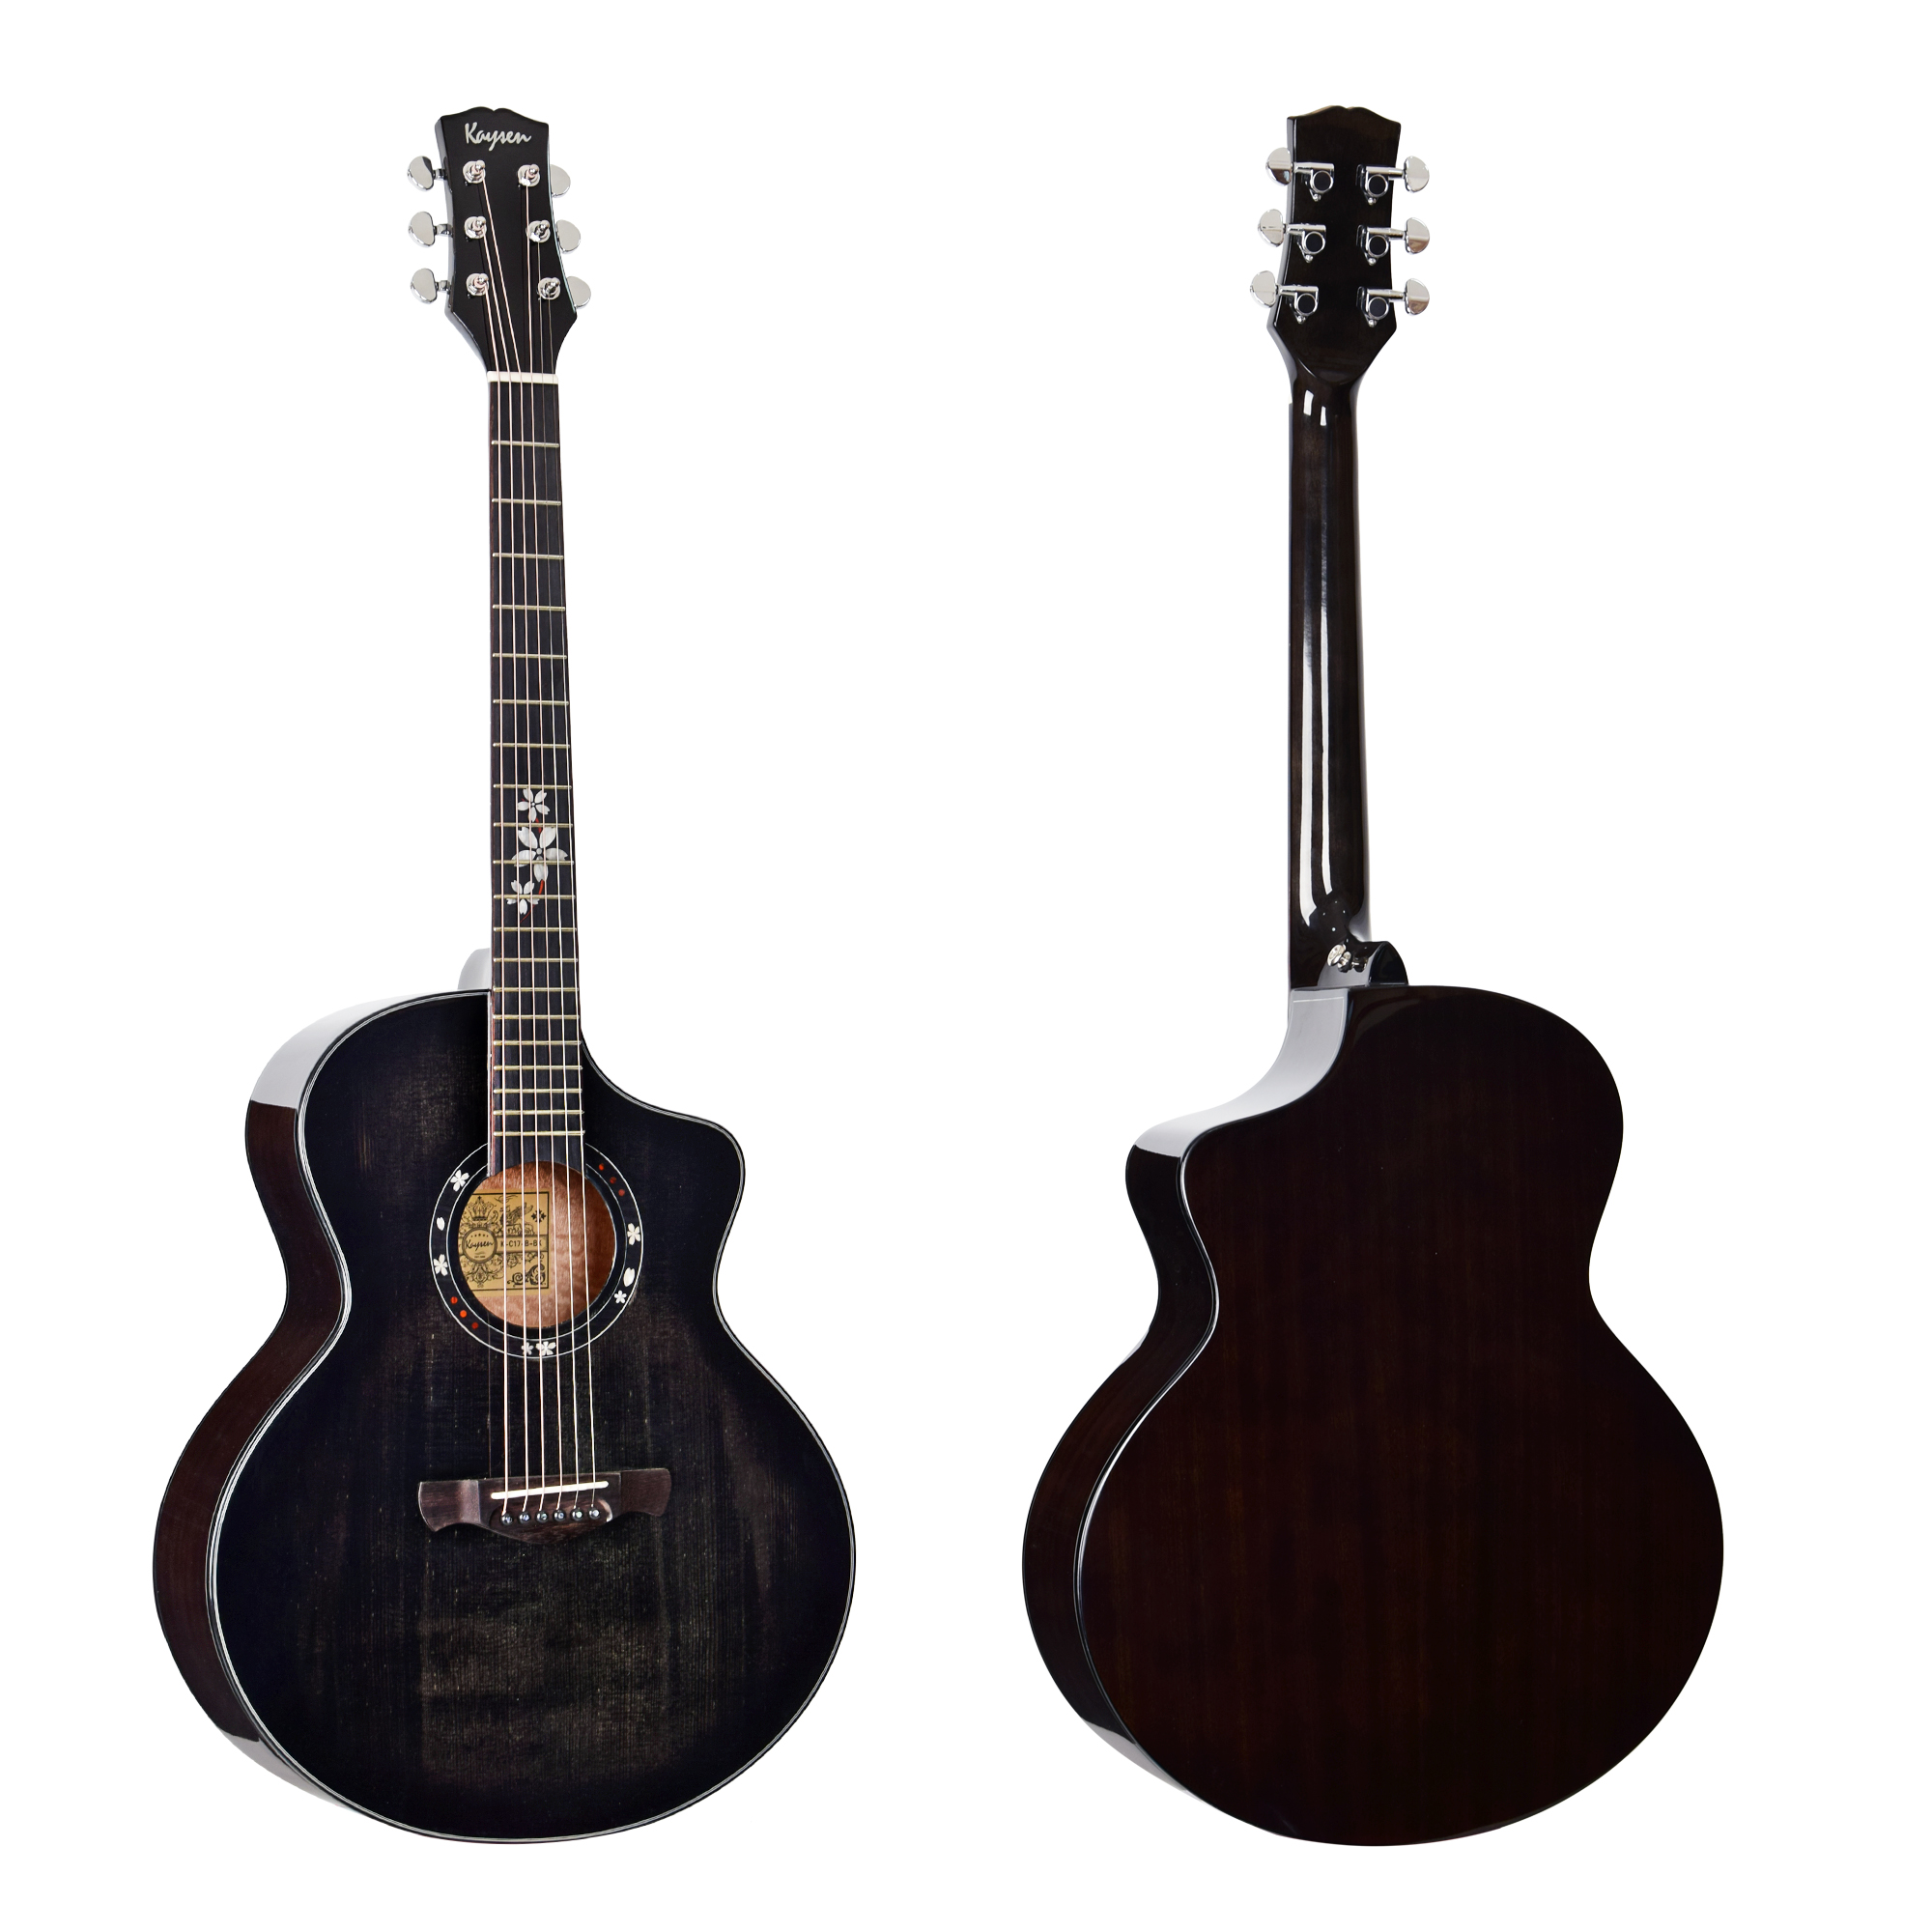 גיטרה אקוסטית מוגברת K-c17B BK שחורה Acoustic guitar solid wood top